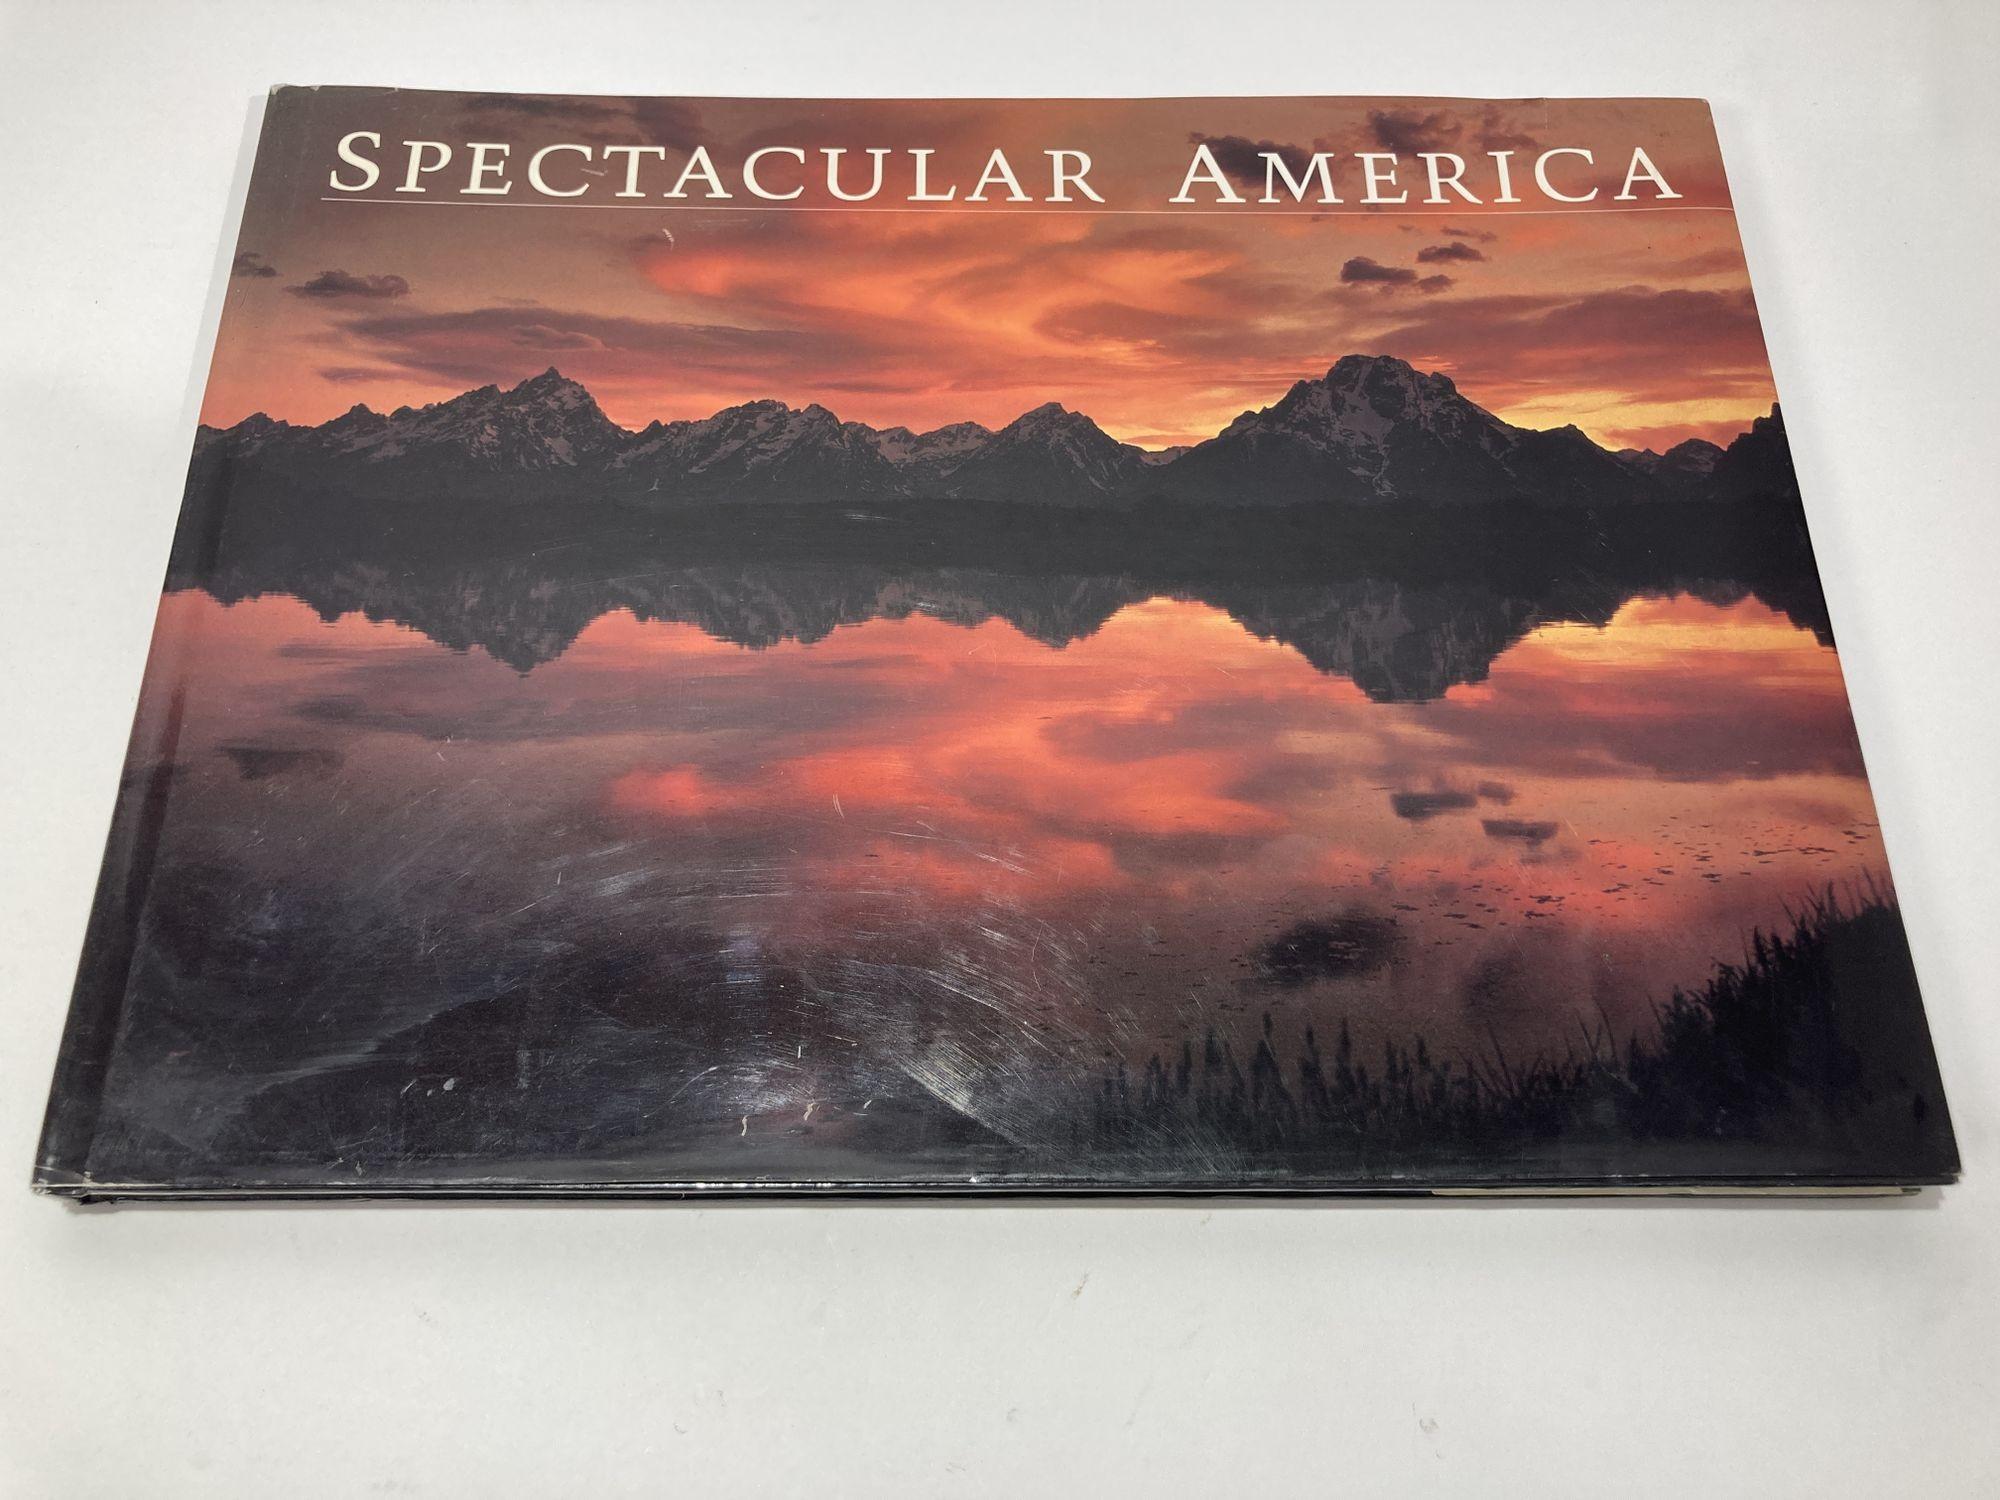 Spectacular America Livre relié 1994
Grand format horizontal - 16 x 12 pouces comprenant 180 planches en couleur et le texte d'accompagnement.
L'Amérique spectaculaire transmet toute la grandeur des sites les plus impressionnants du